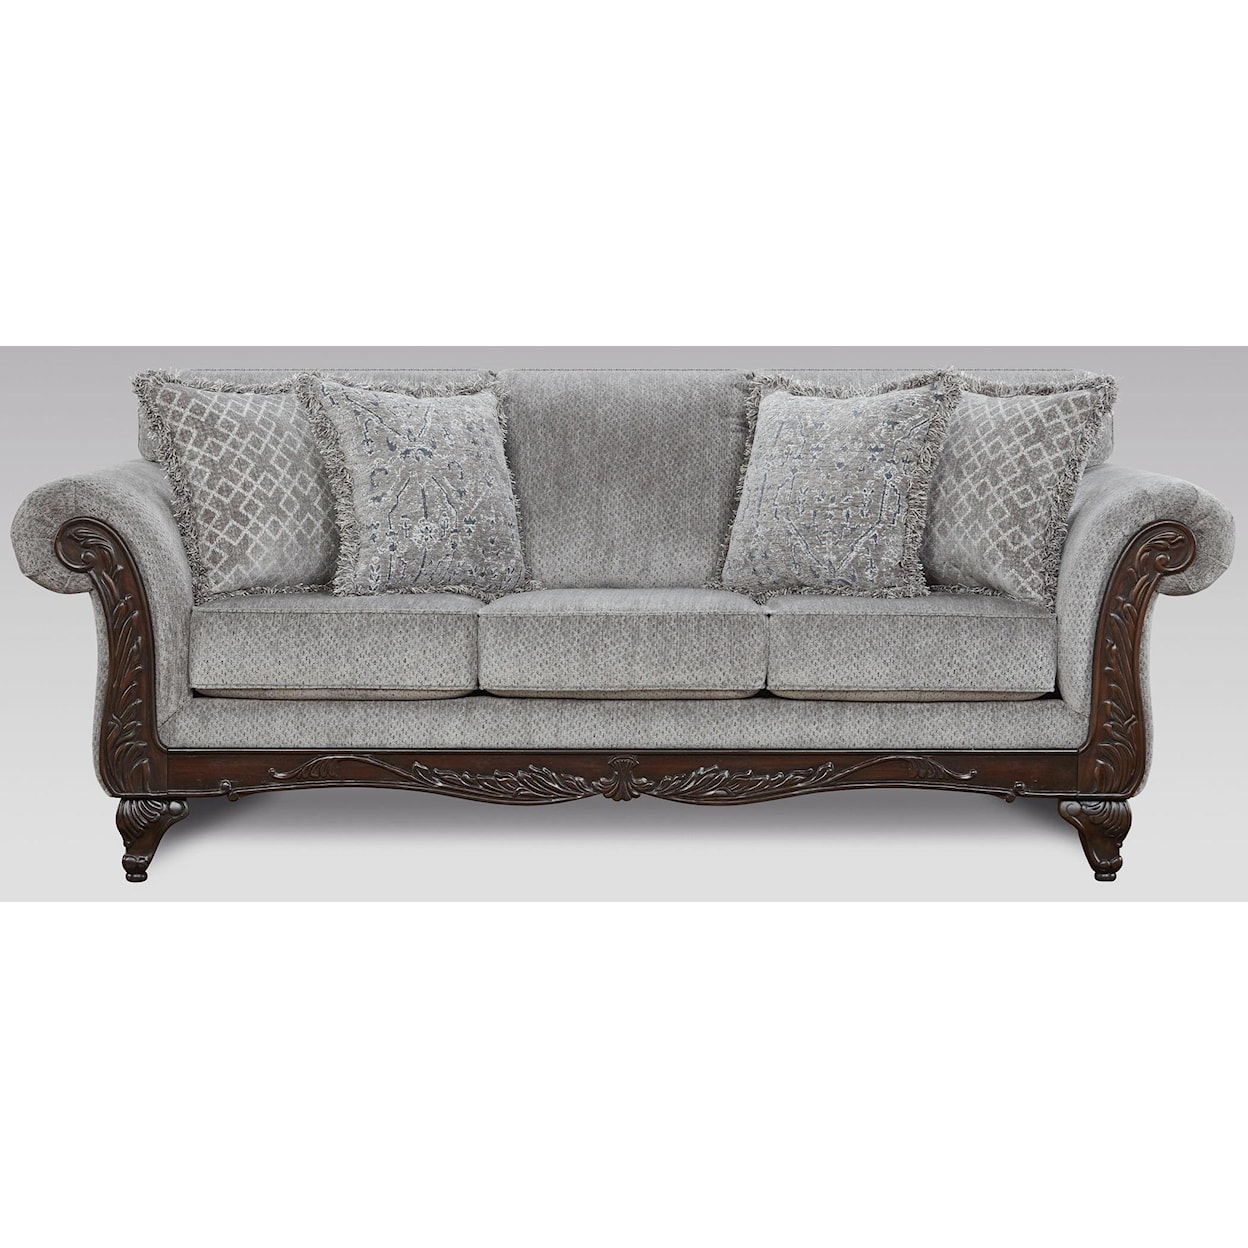 Affordable Furniture 8550 Emma Slate Upholstered Sofa